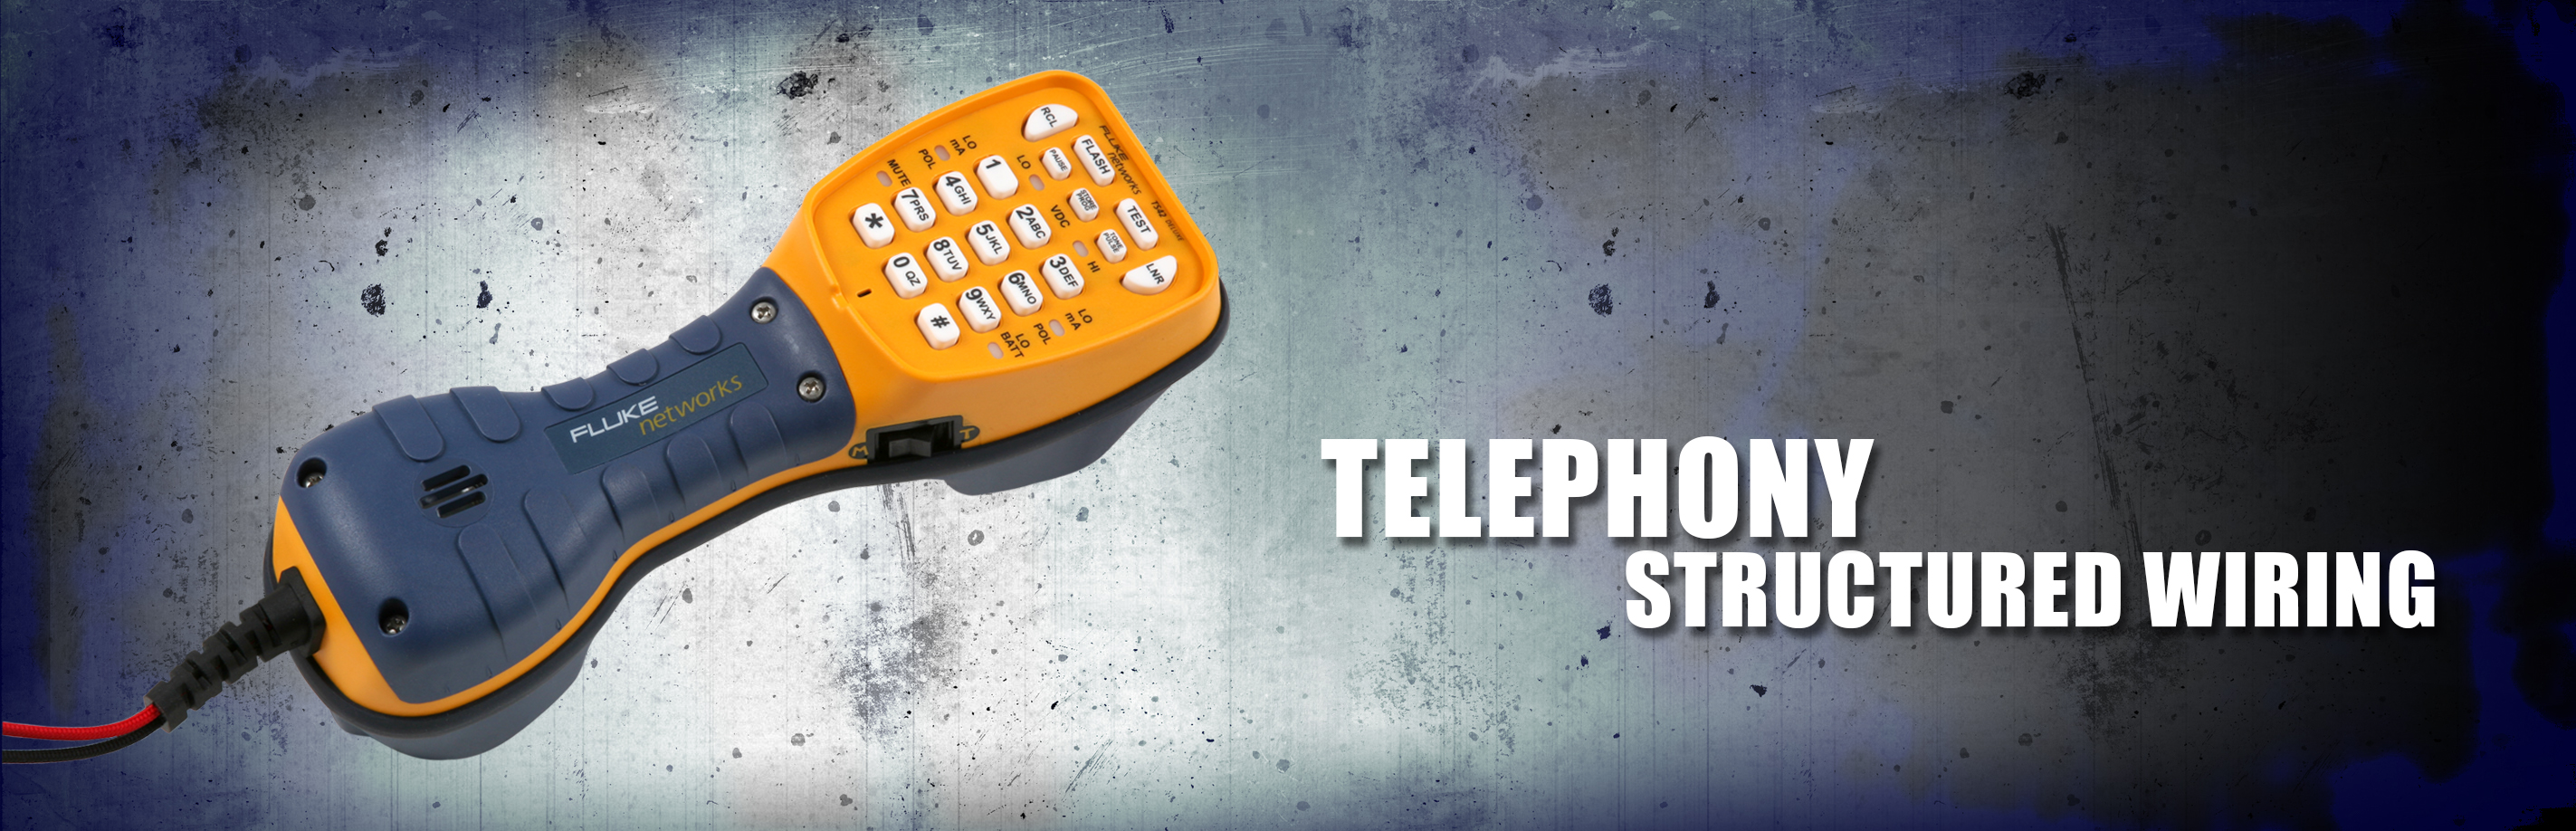 Telephony Essentials